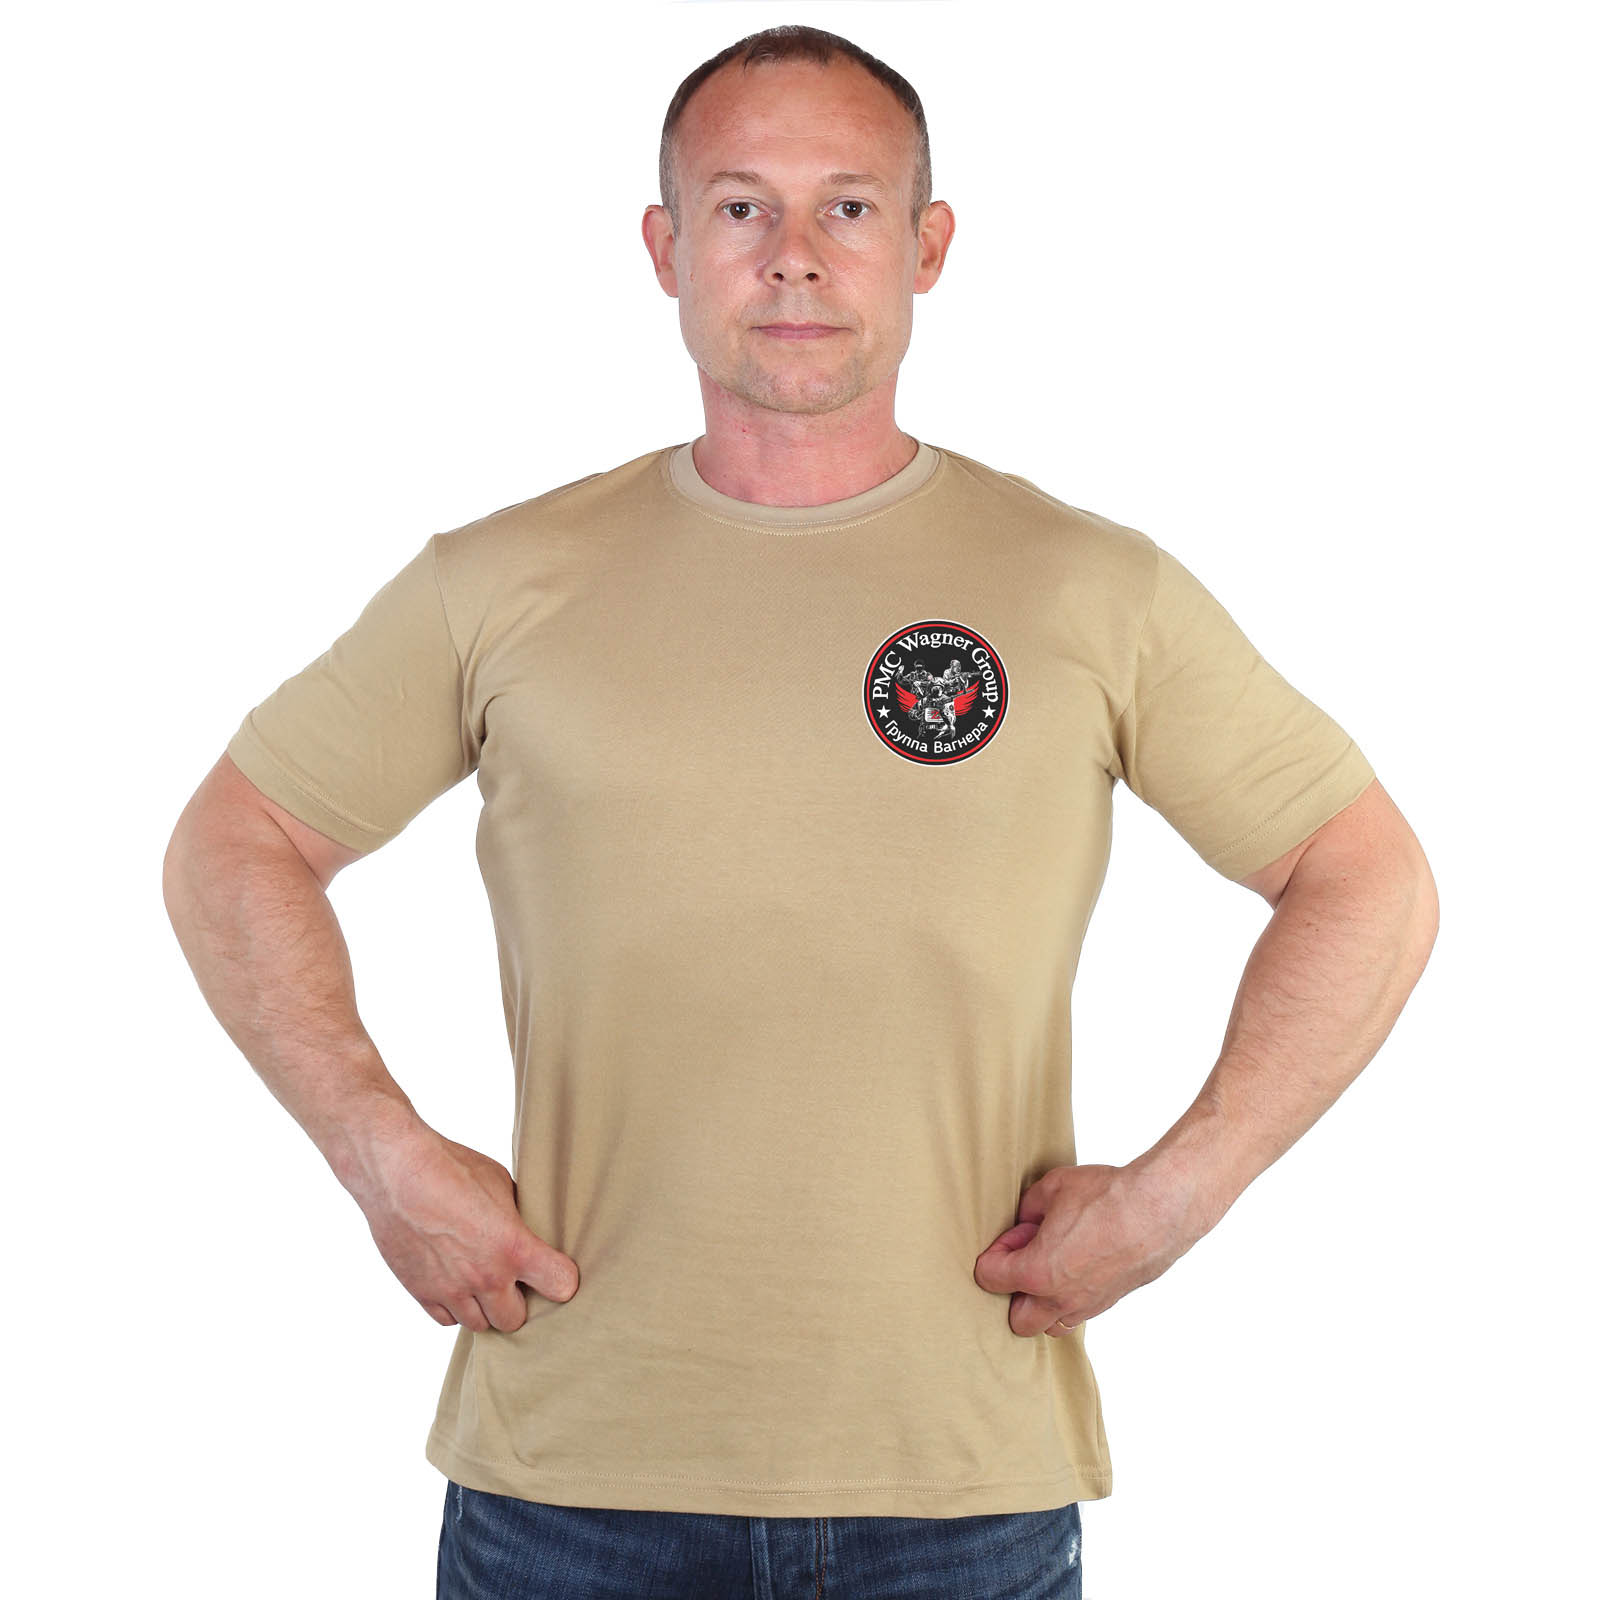 Песочная футболка с термопринтом "Группа Вагнера"